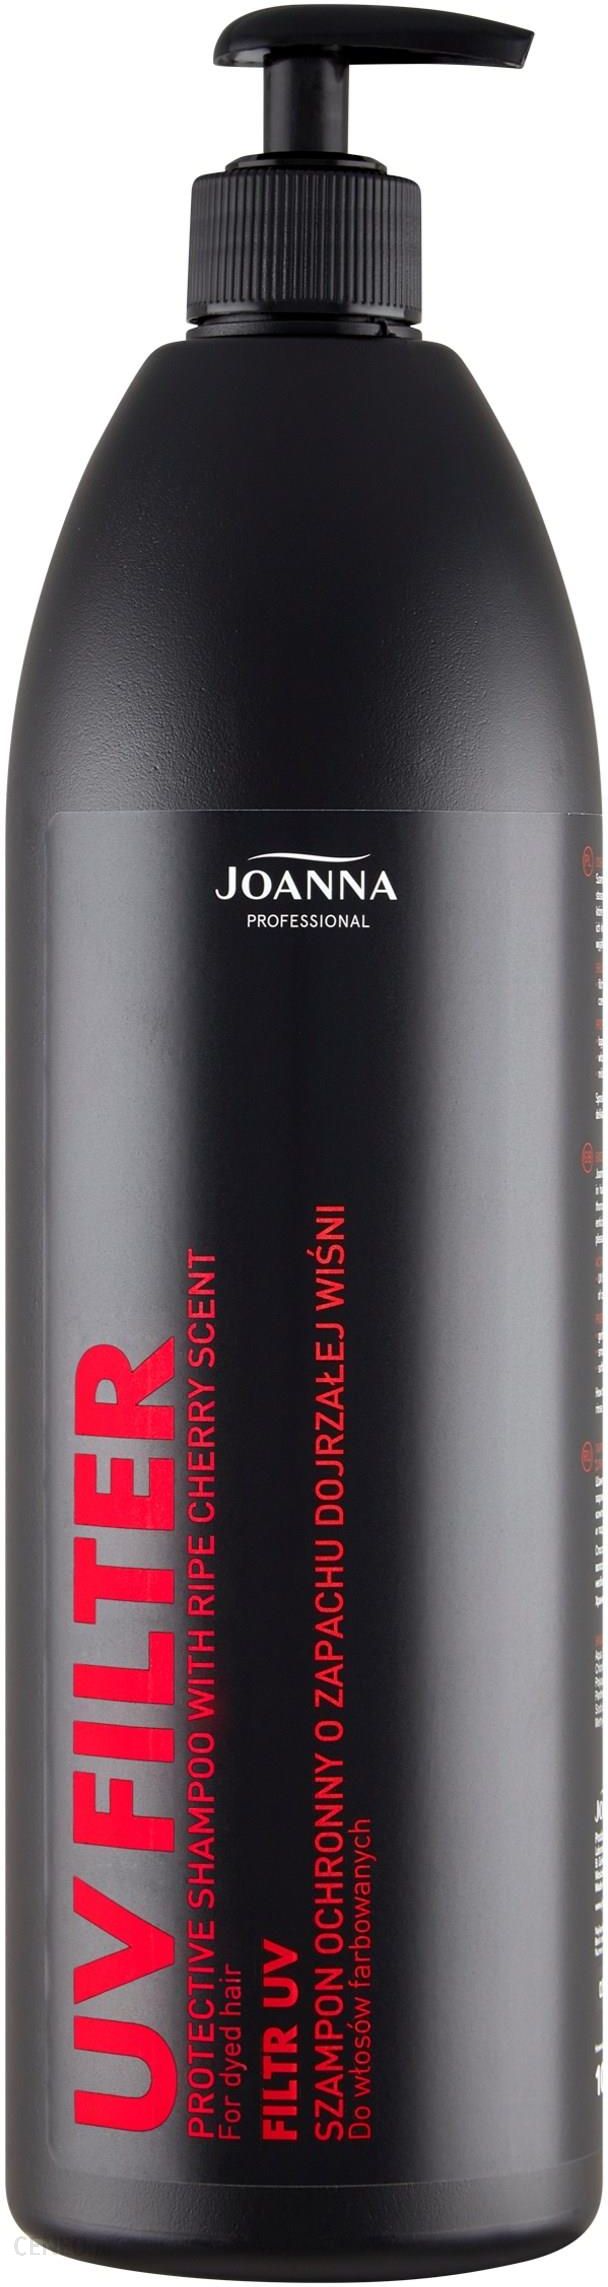 joanna professional szampon do włosów o zapachu wiśni